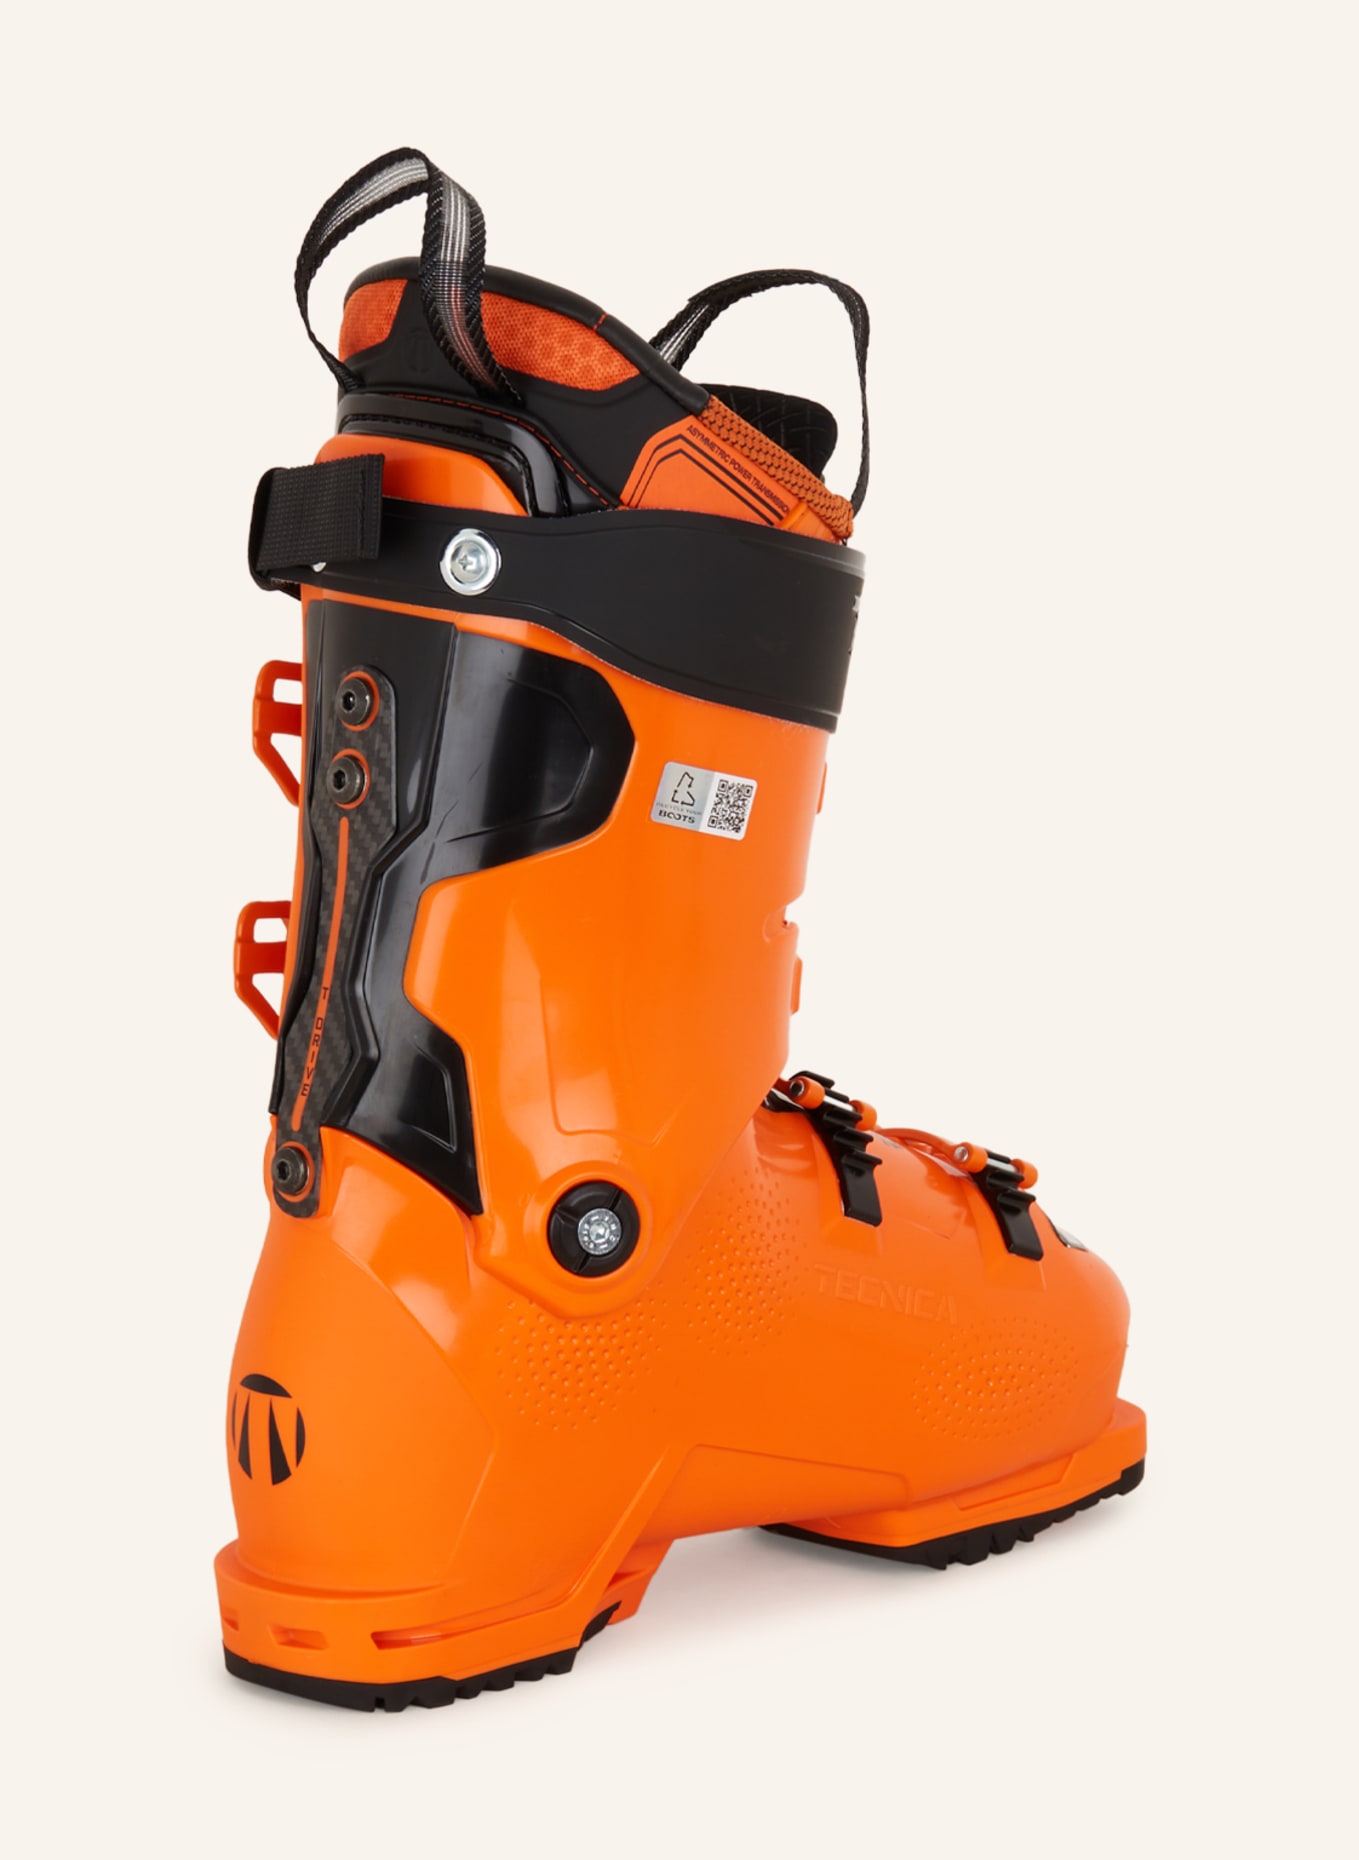 Mach1 MV 130 Ski Boots - Men's - 2023/2024